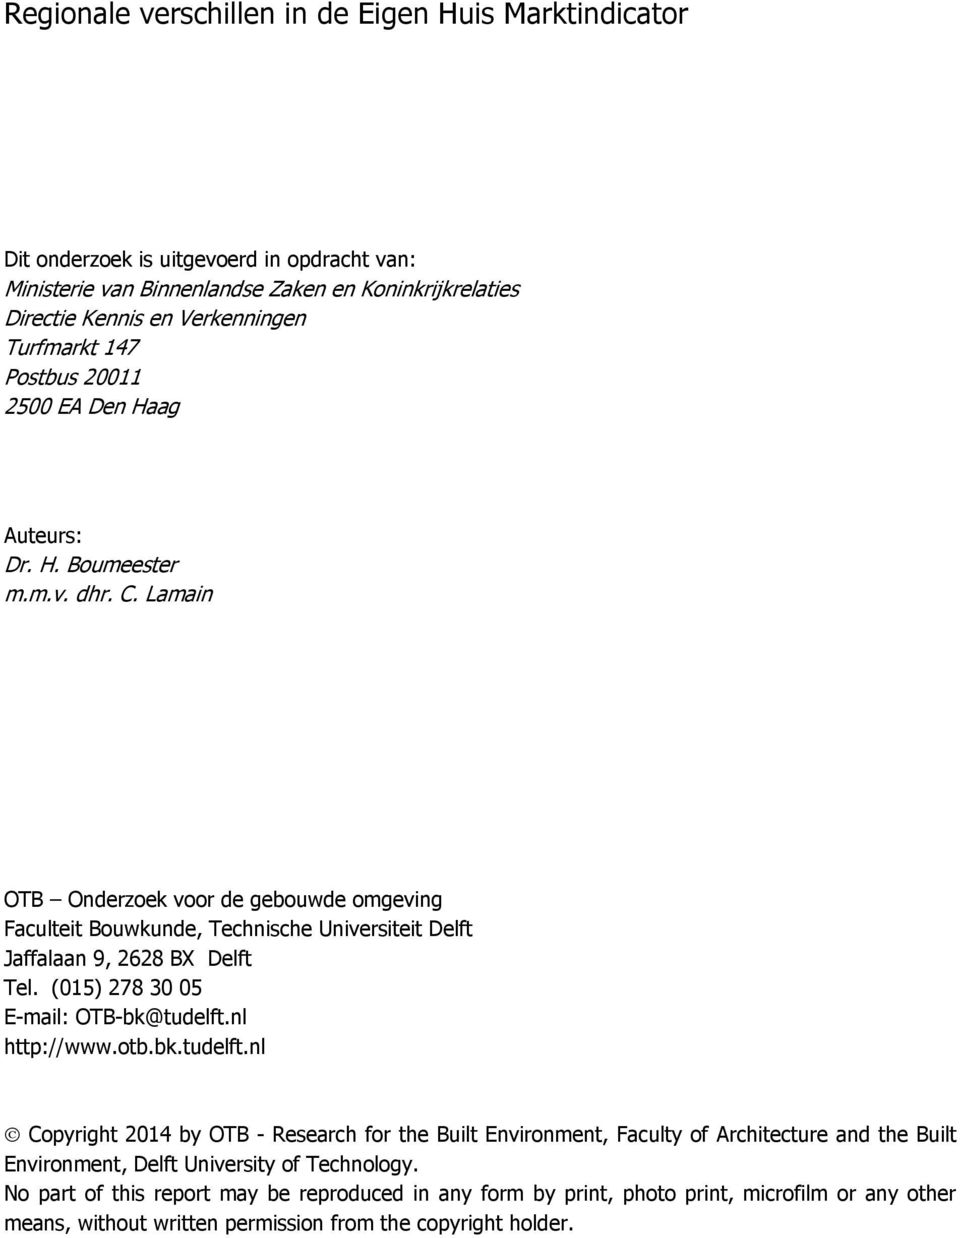 Lamain OTB Onderzoek voor de gebouwde omgeving Faculteit Bouwkunde, Technische Universiteit Delft Jaffalaan 9, 2628 BX Delft Tel. (015) 278 30 05 E-mail: OTB-bk@tudelft.